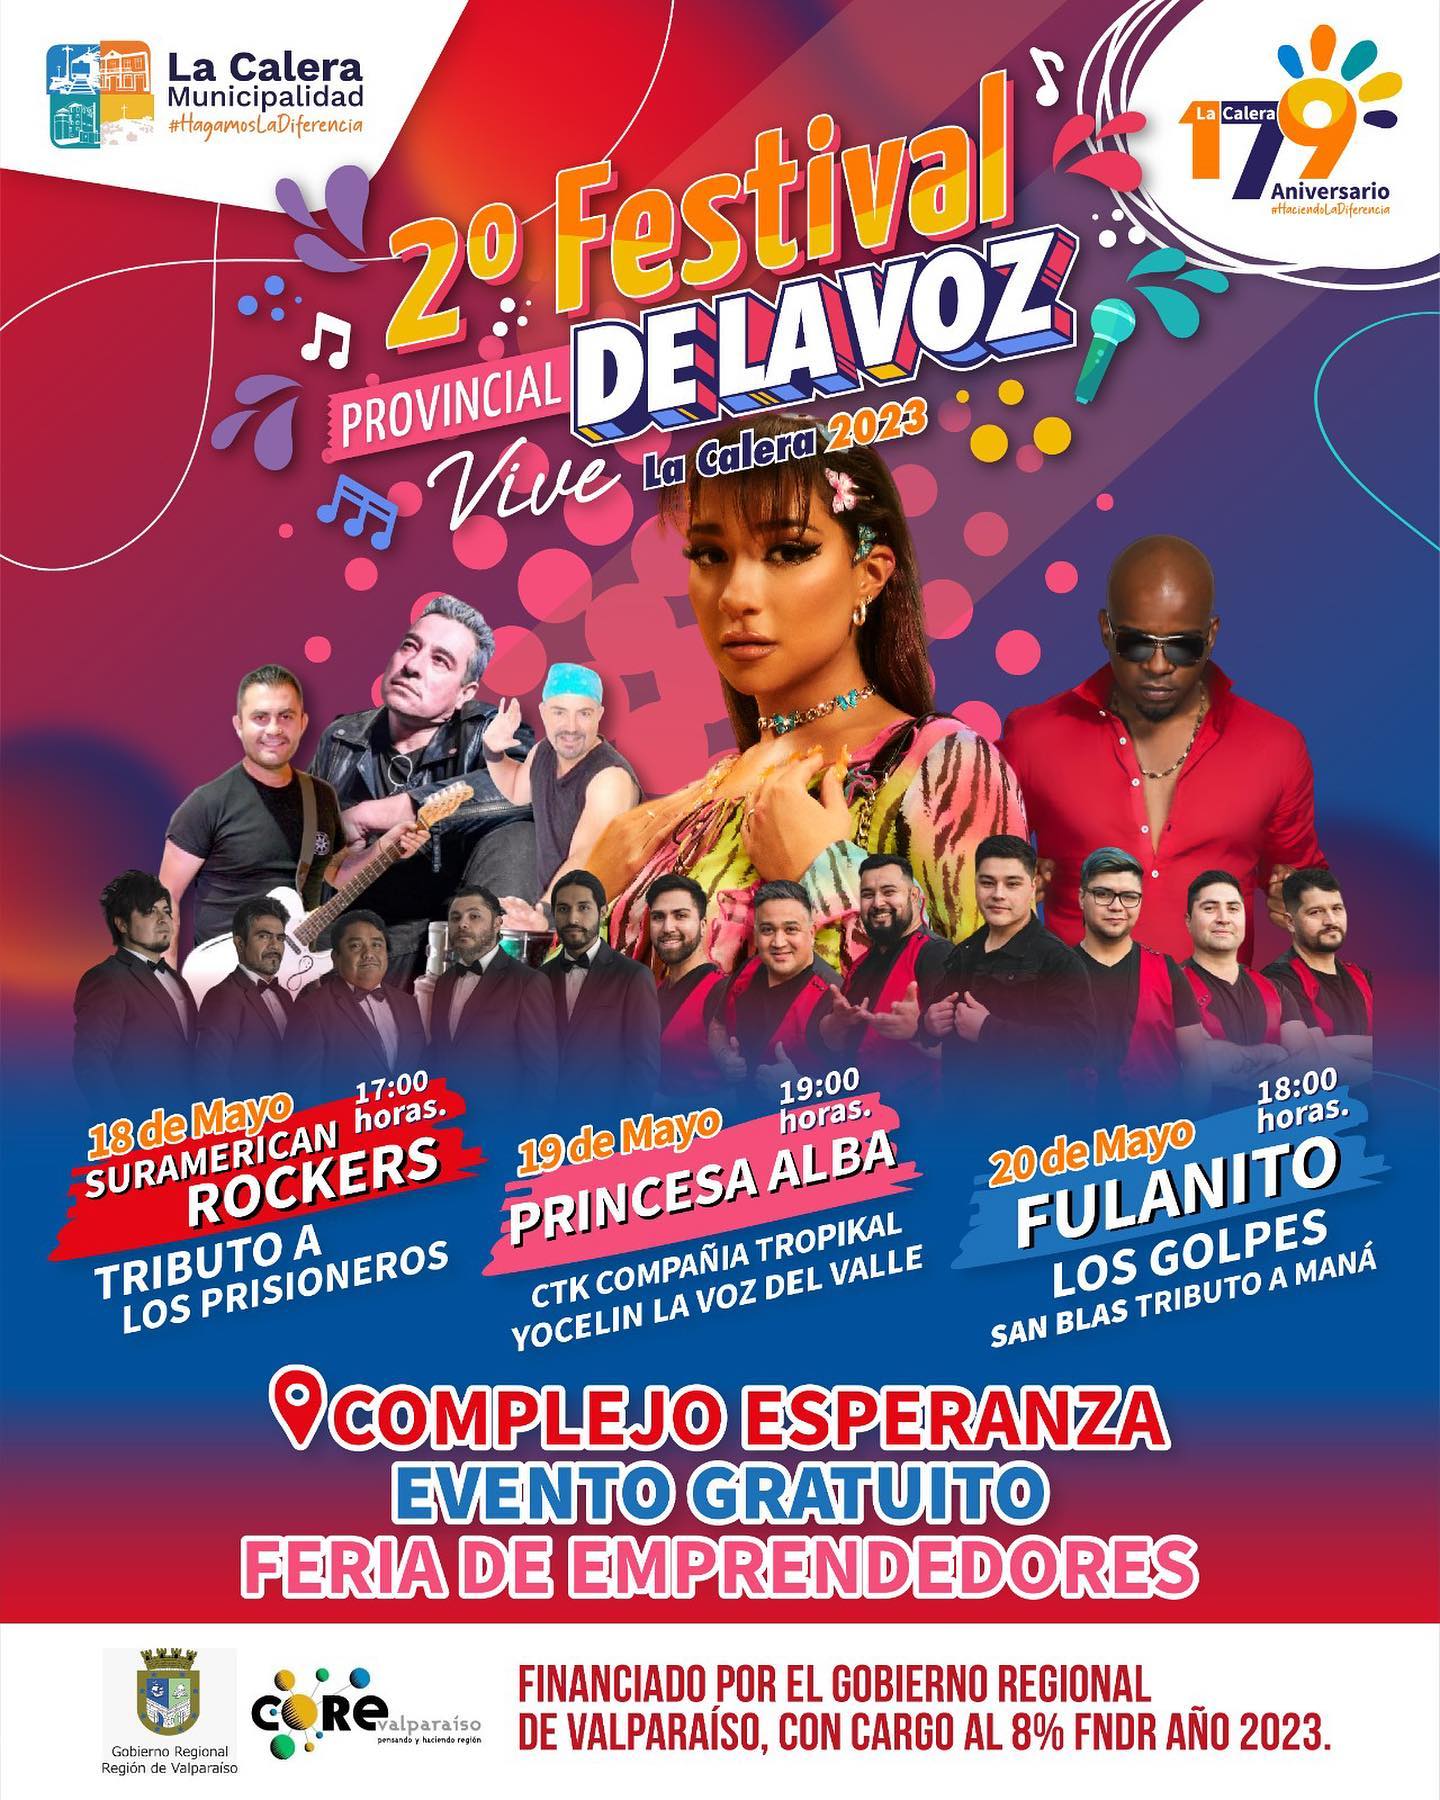 2° Festival de la Voz de La Calera 2023 artistas y fechas